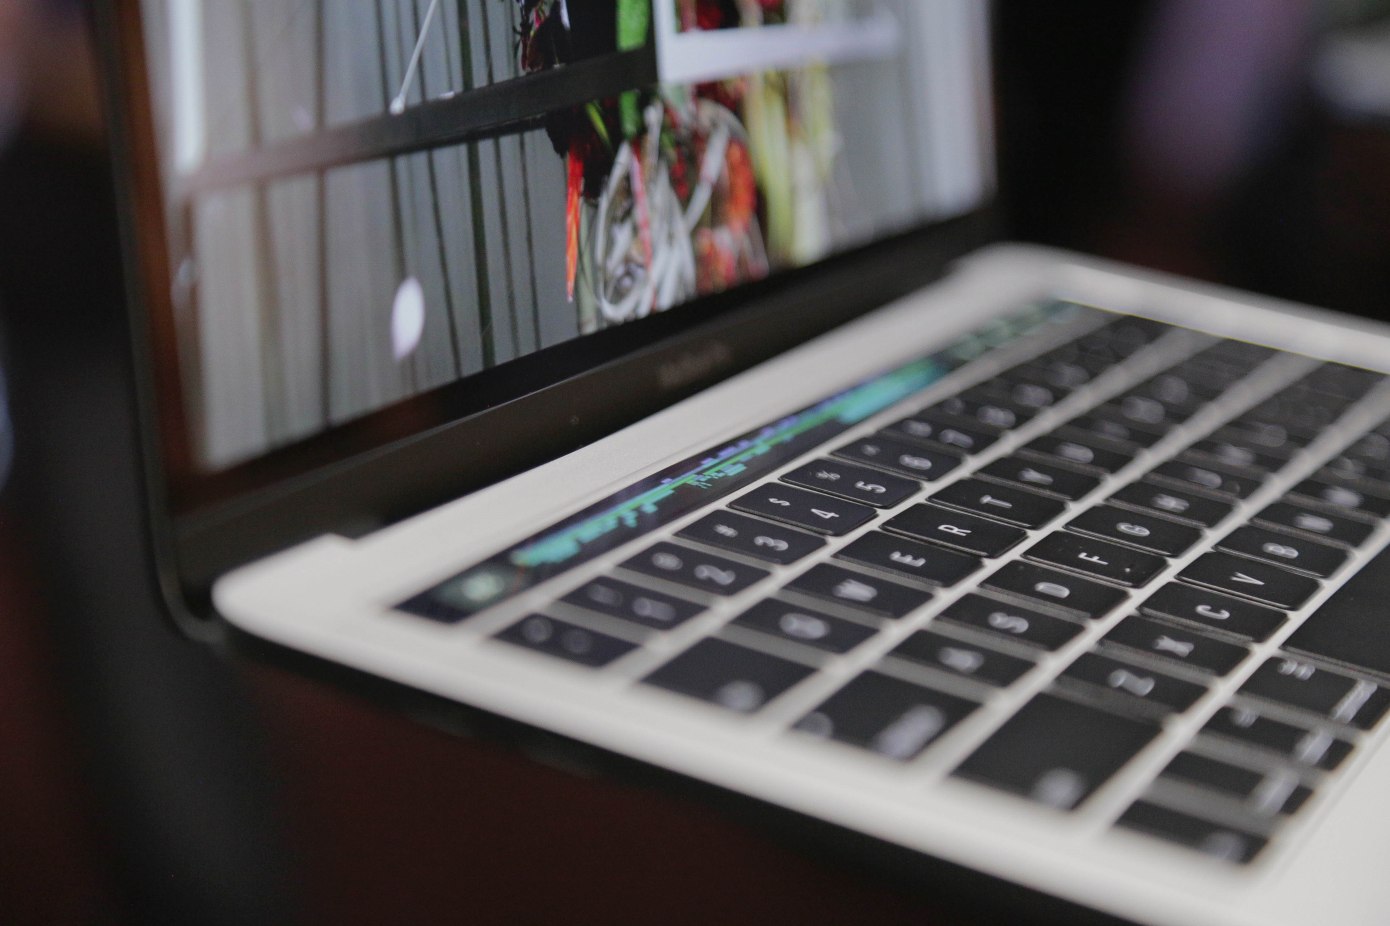 13 inçlik yeni MacBook Pro modelinde kapanma sorunu